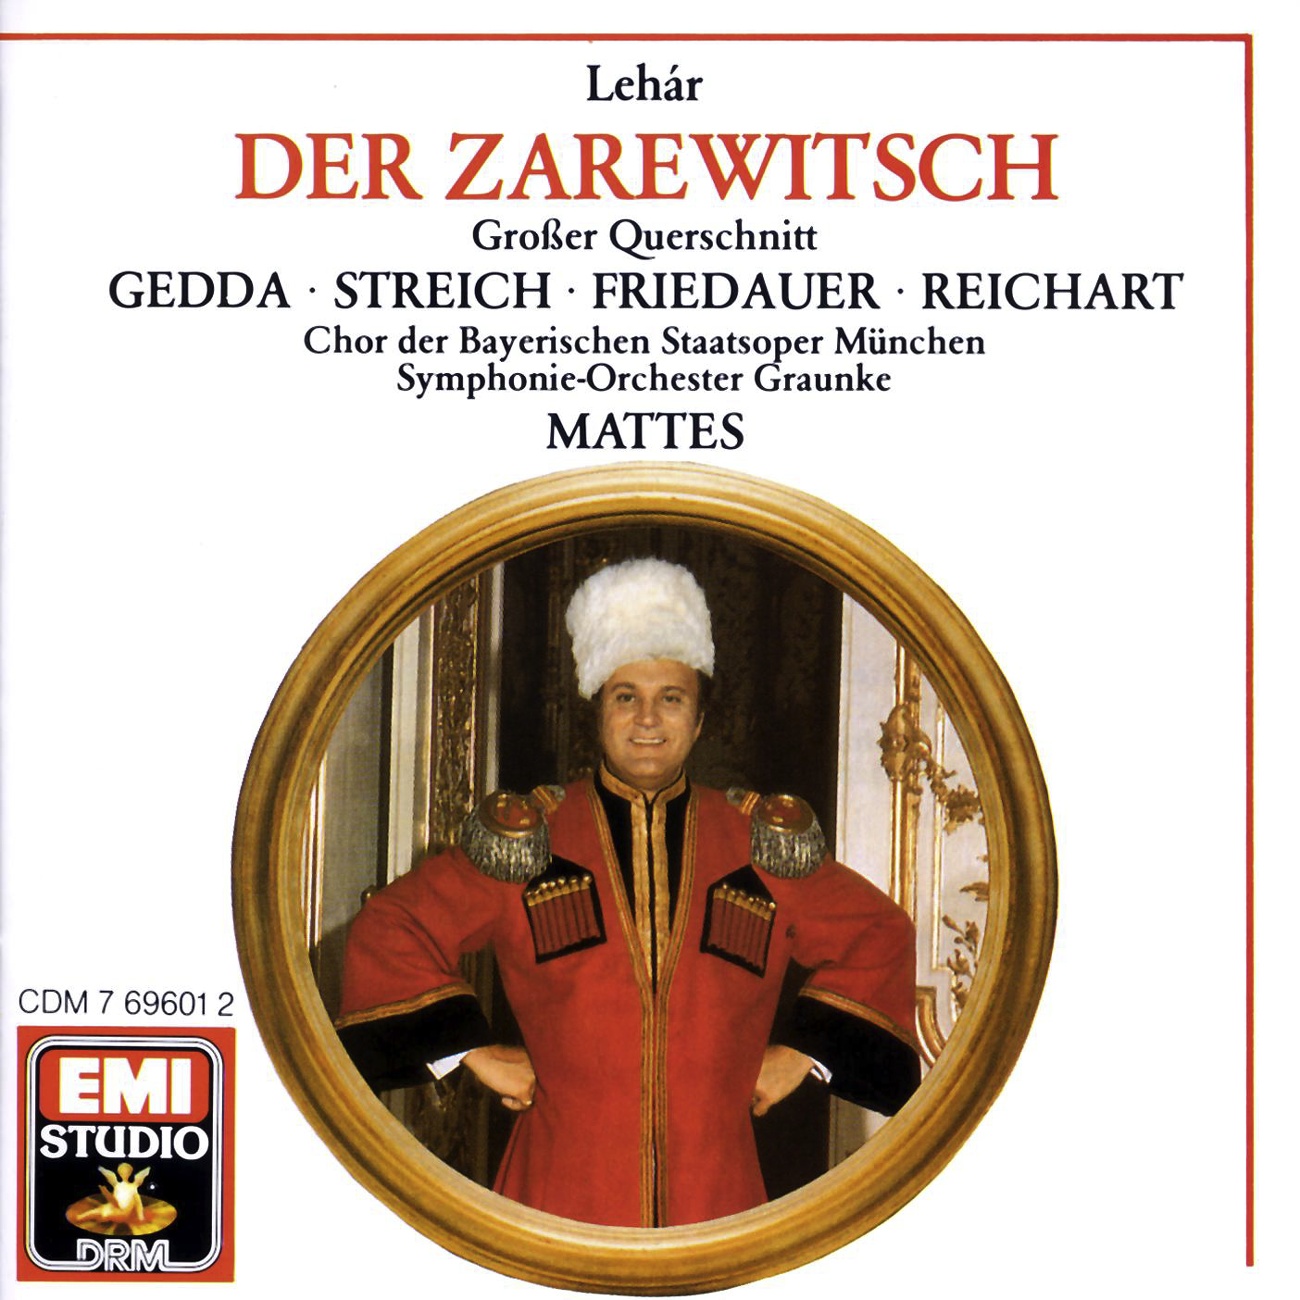 Der Zarewitsch  Highlights 1988 Digital Remaster, Zweiter Akt: Was mir einst an dir gefiel  Heute abnd komm' ich zu dir Mas